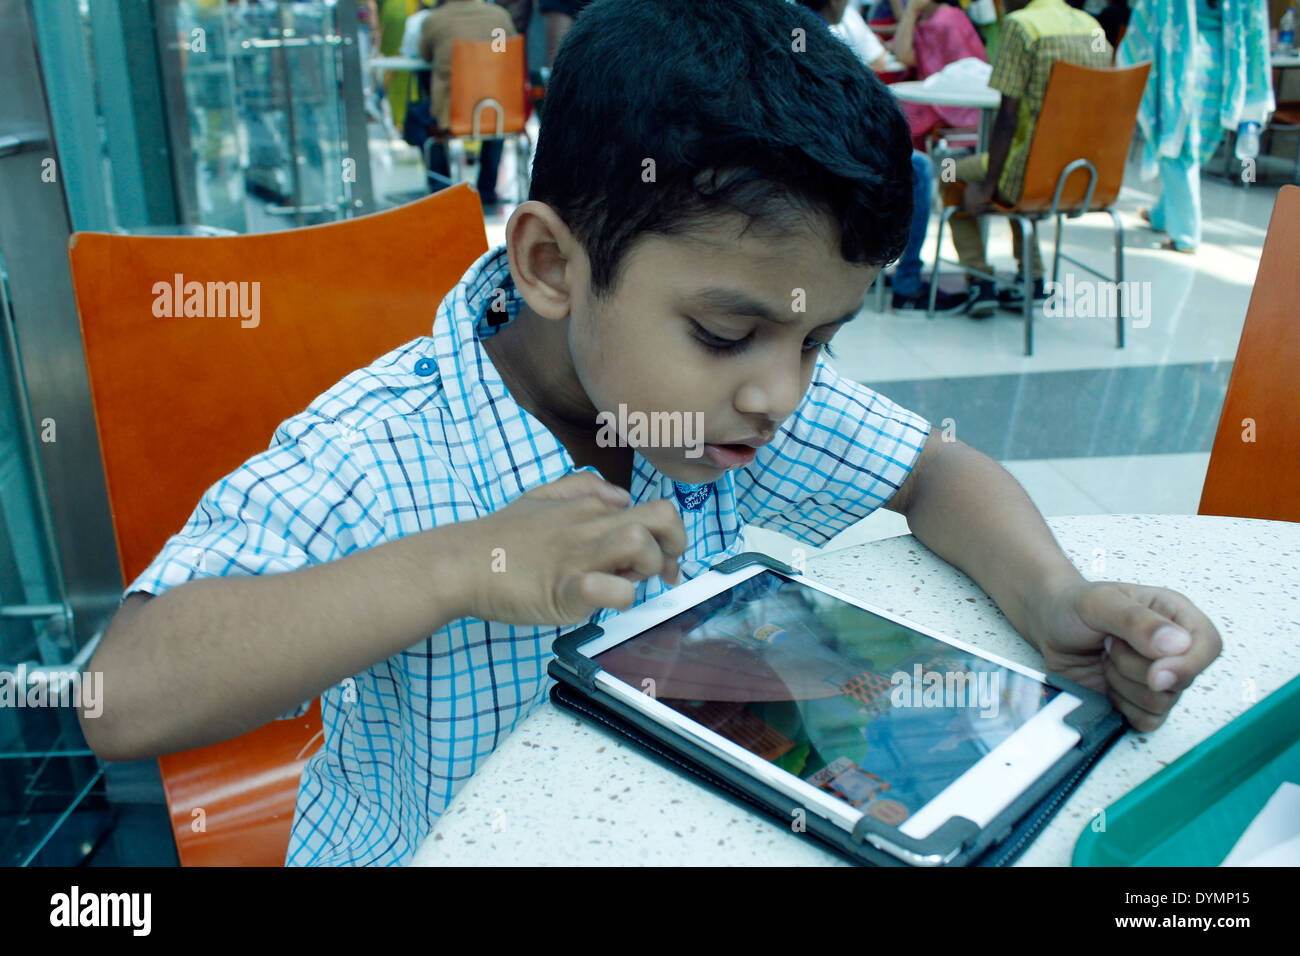 Jeune Indien jouant sur un ipad Banque D'Images